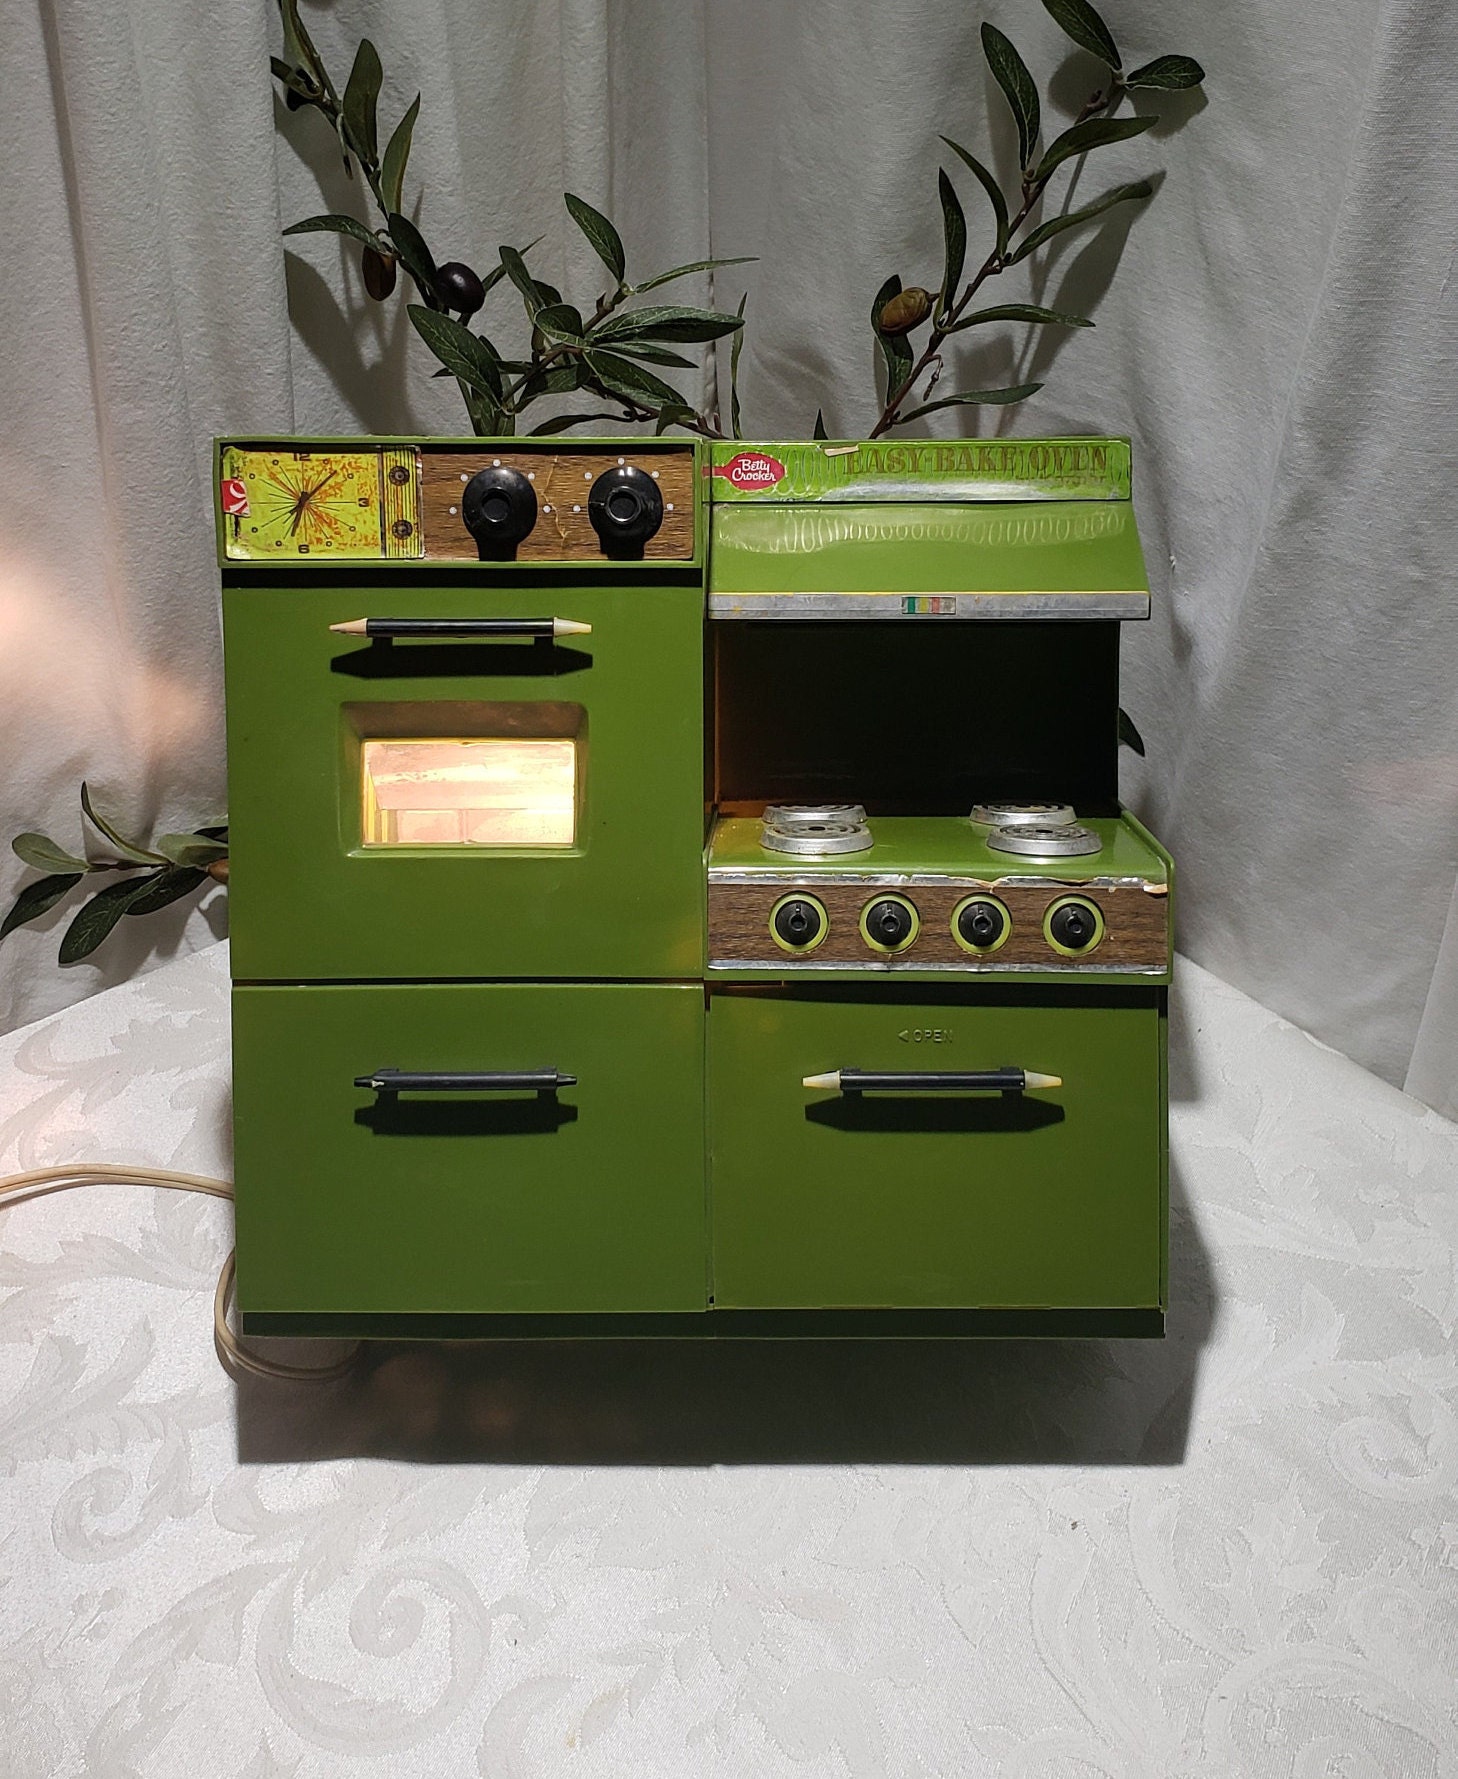 Easy Bake Ovens : r/70s